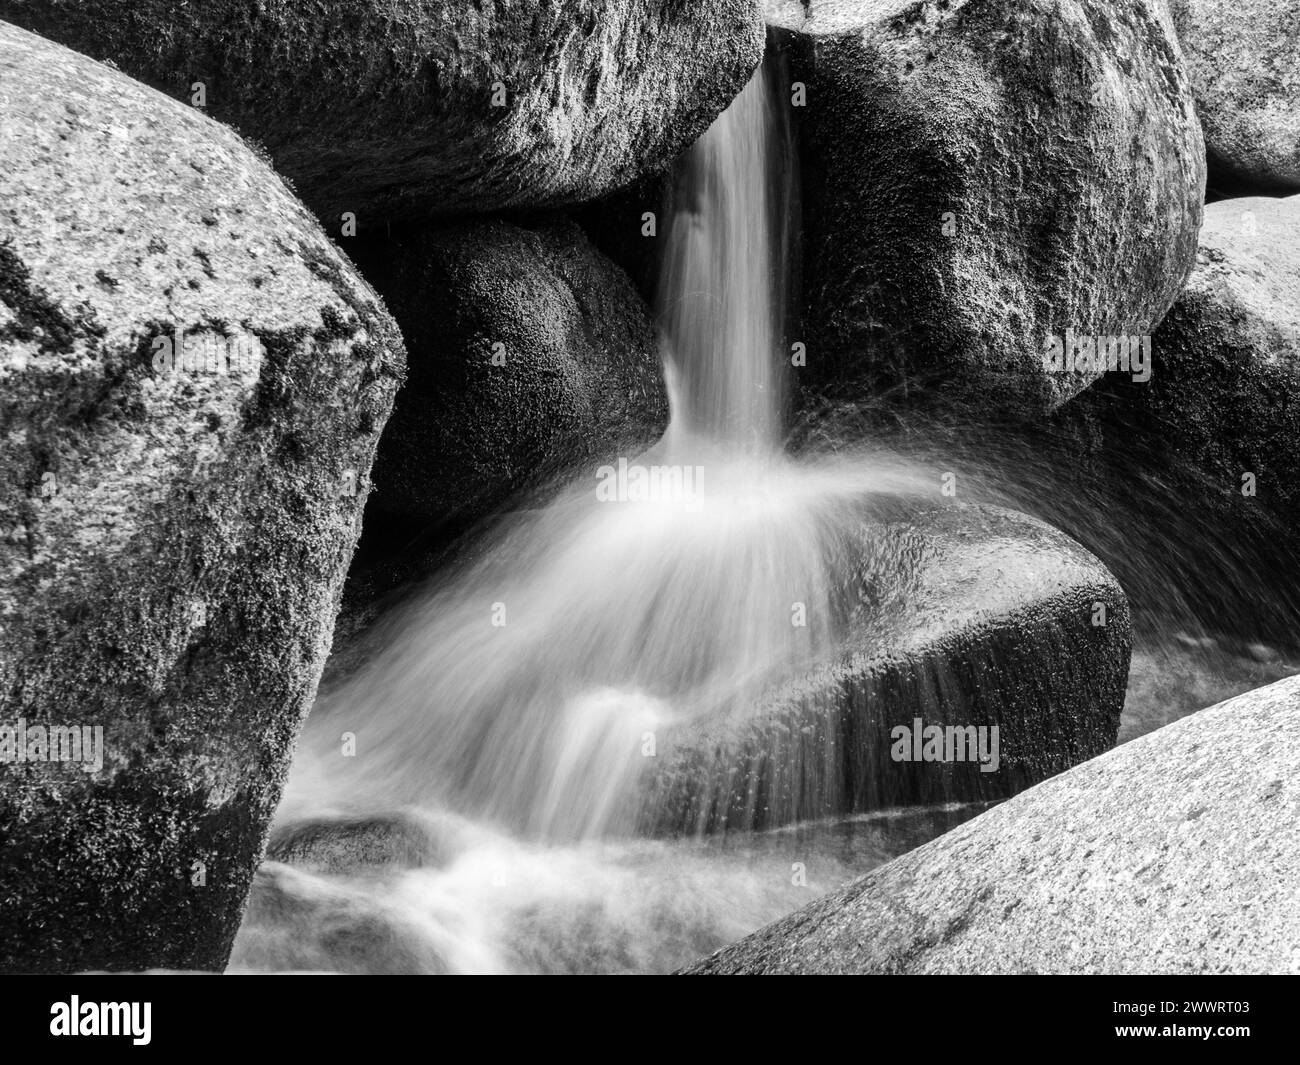 Vue détaillée de la petite cascade de rivière sur une rivière de montagne rocheuse. Eau de soie floue par tir à longue exposition. Image en noir et blanc. Banque D'Images